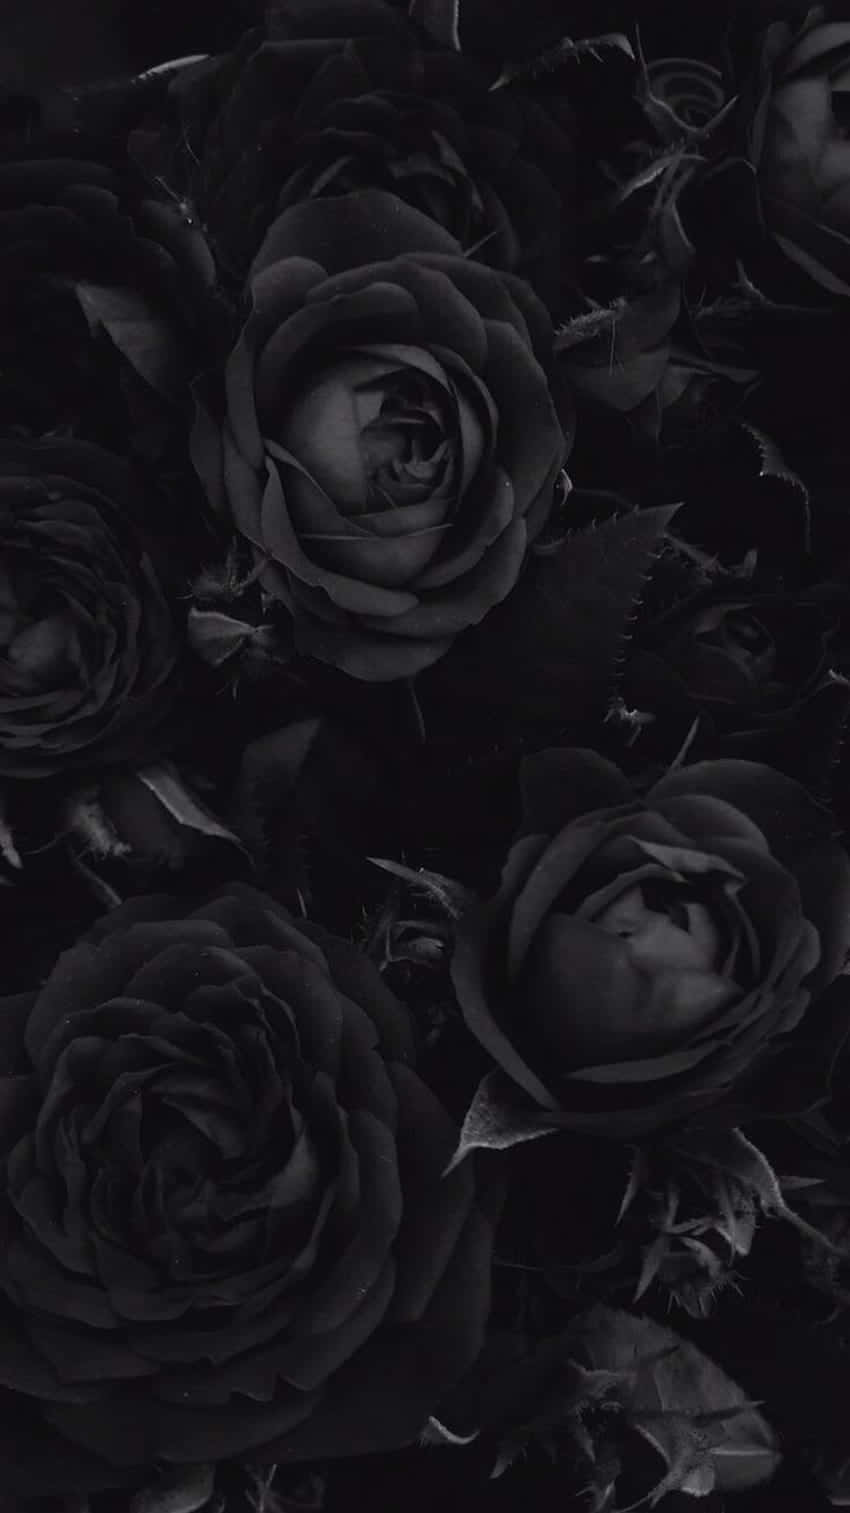 Släpploss Den Mörka Skönheten I Goth Aesthetic Black. Wallpaper